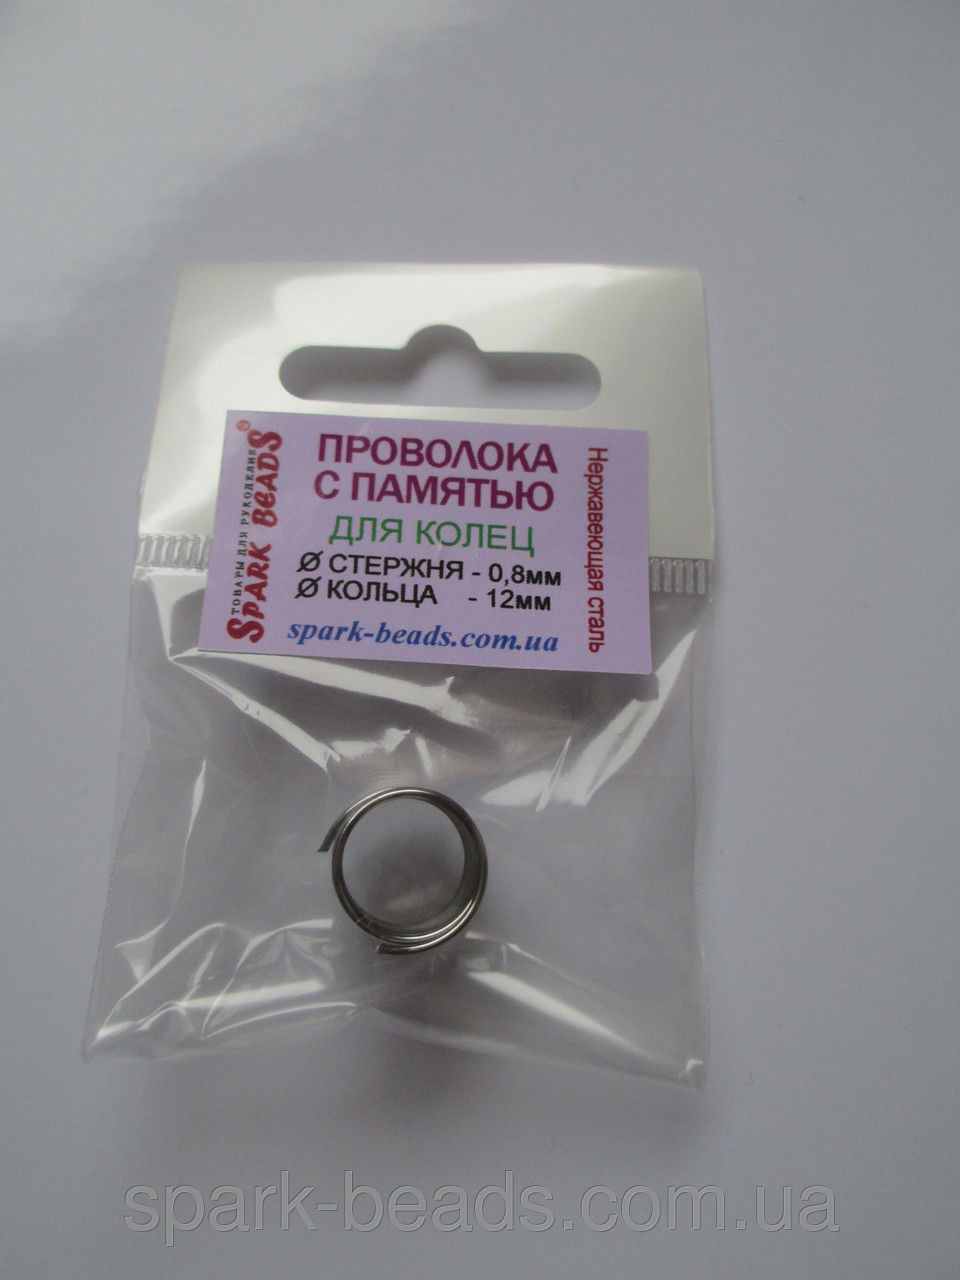 Проволока с памятью цвет серебро, диаметр кольца 12 мм, диаметр стержня проволоки 0,8 мм